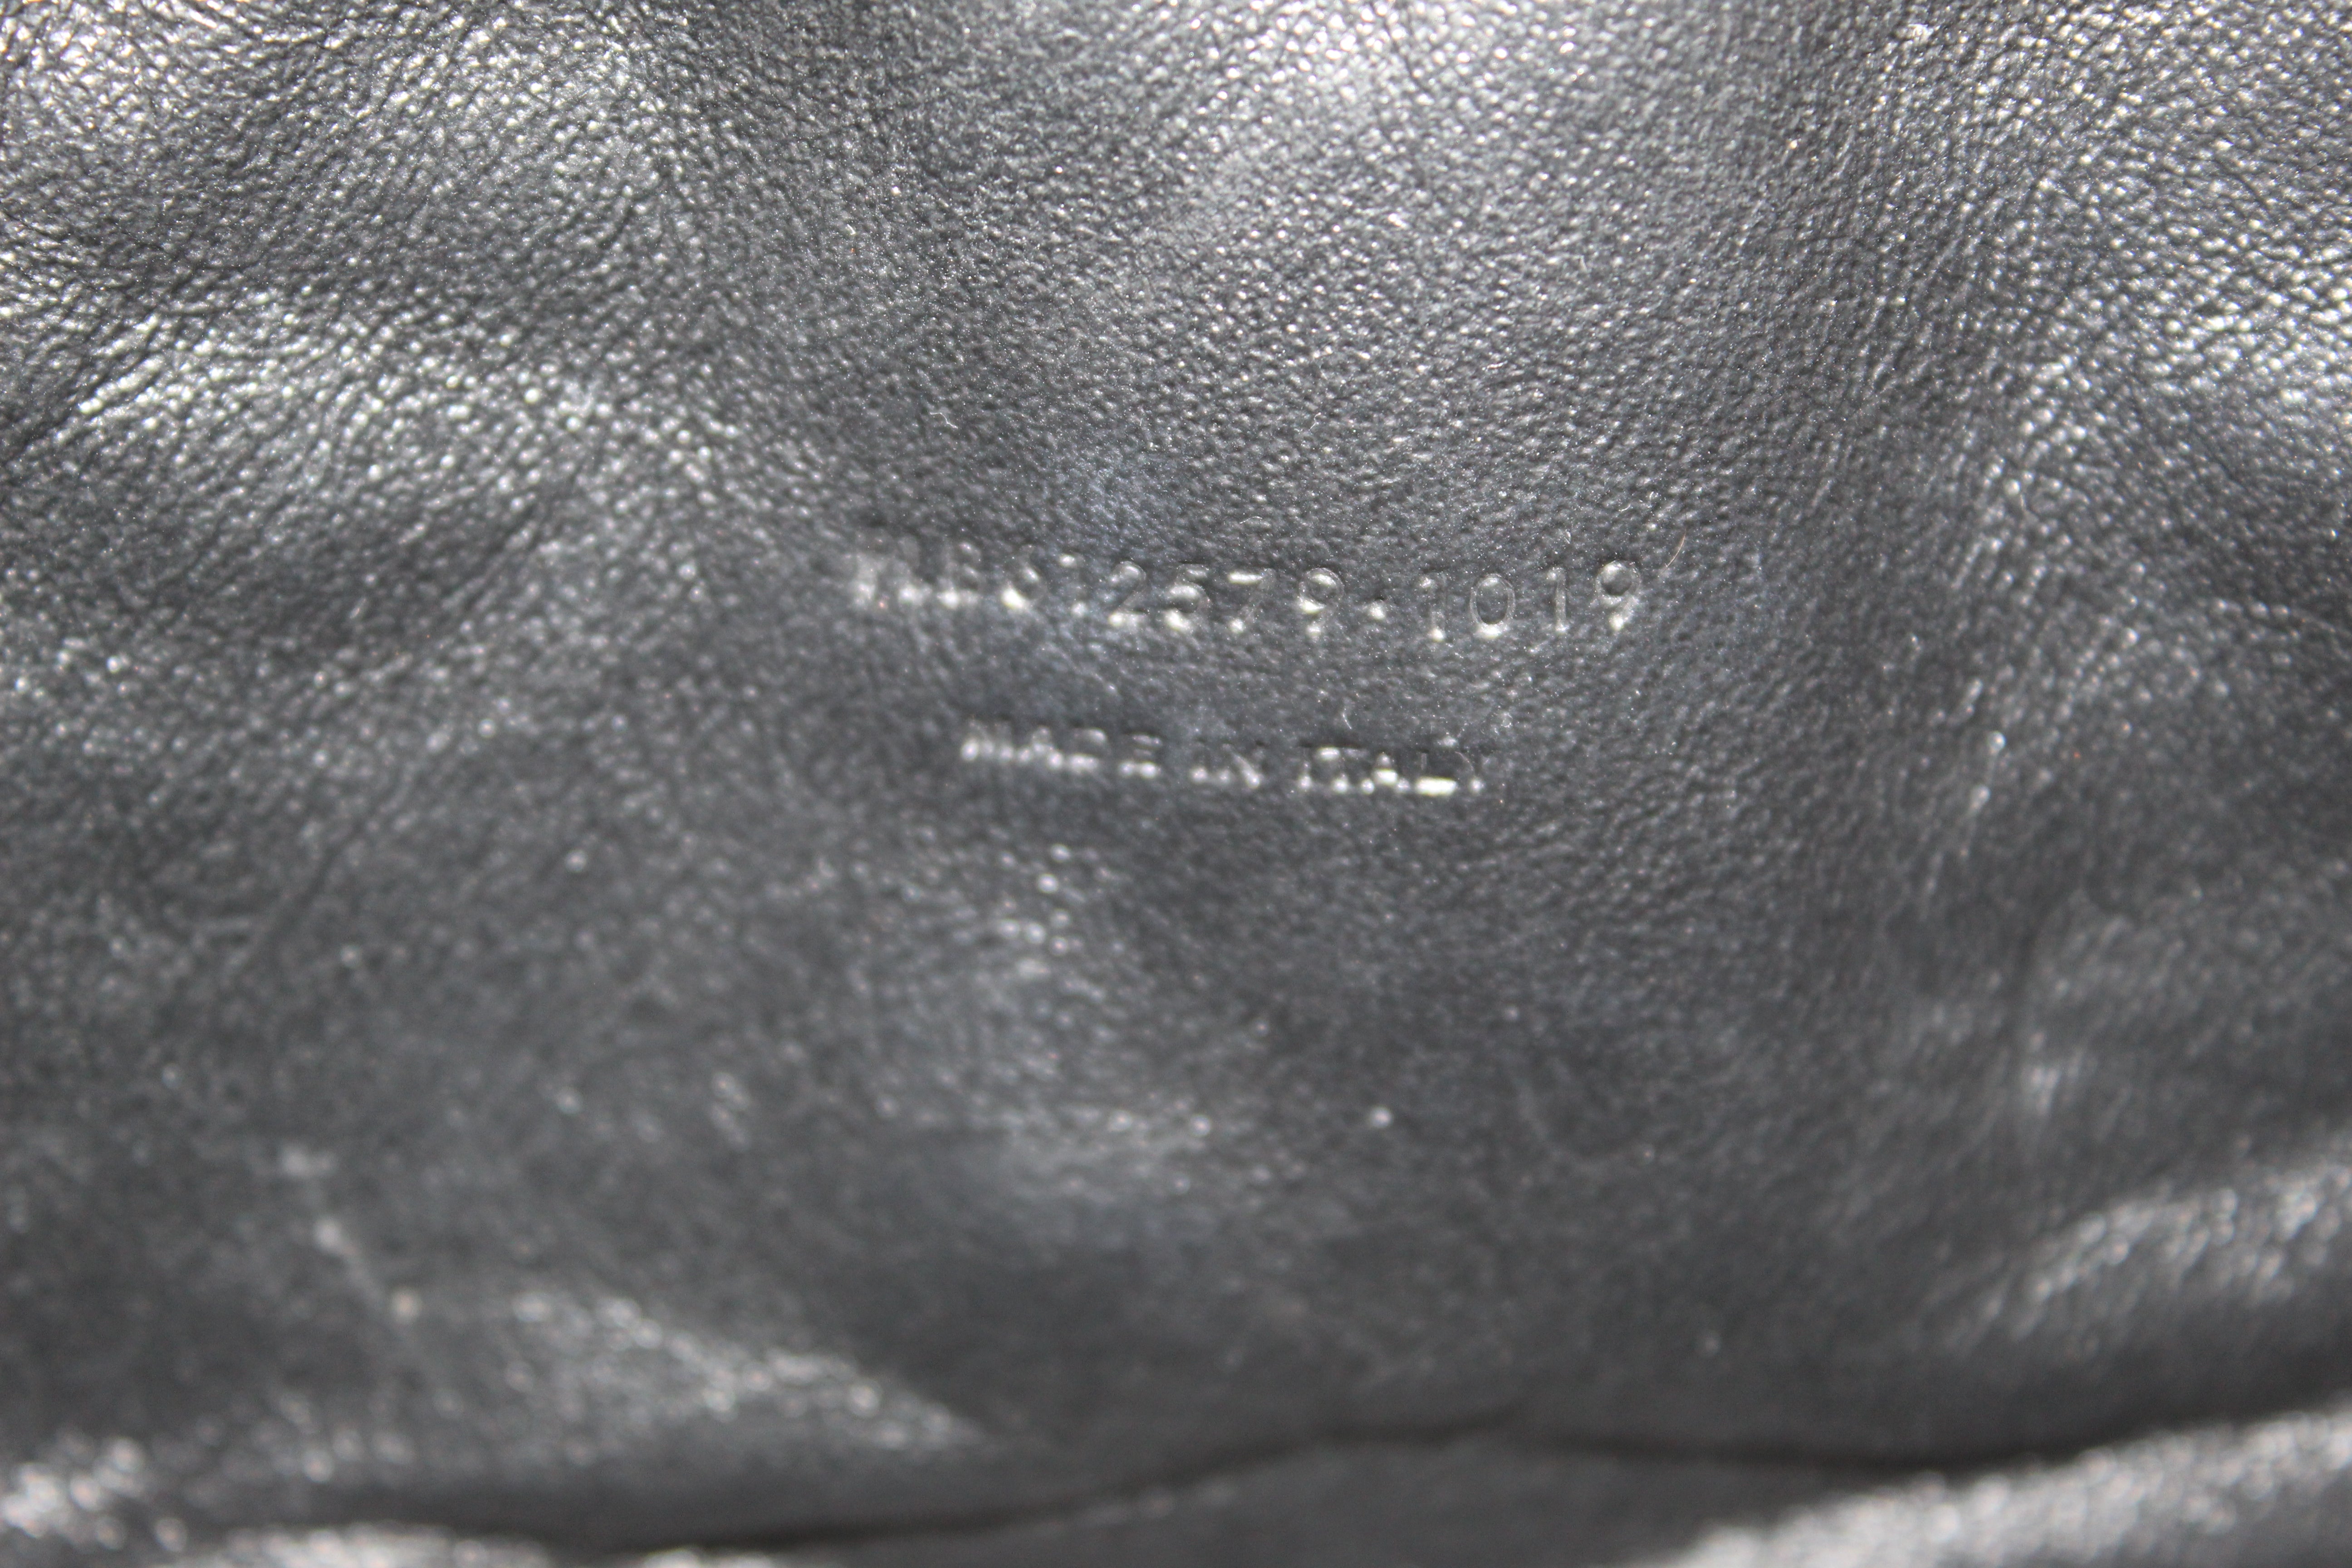 Authentic Saint Laurent Beige Grain Poudre Embossed Leather Lou Mini Bag